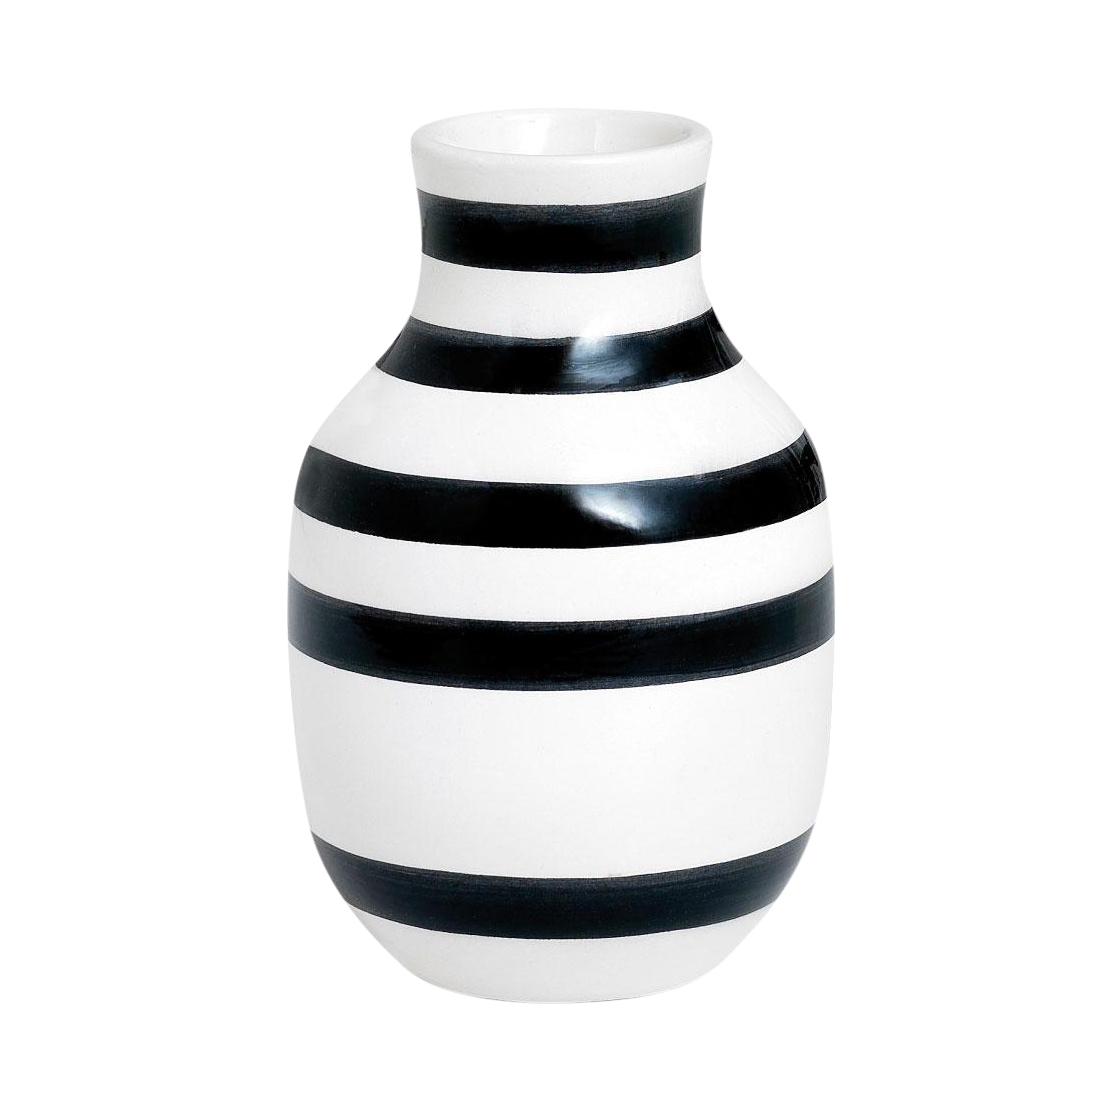 Kähler - Omaggio Vase H 12.5cm - schwarz/H 12,5cm / Ø 8,5cm/Jedes Stück ein Unikat von Kähler